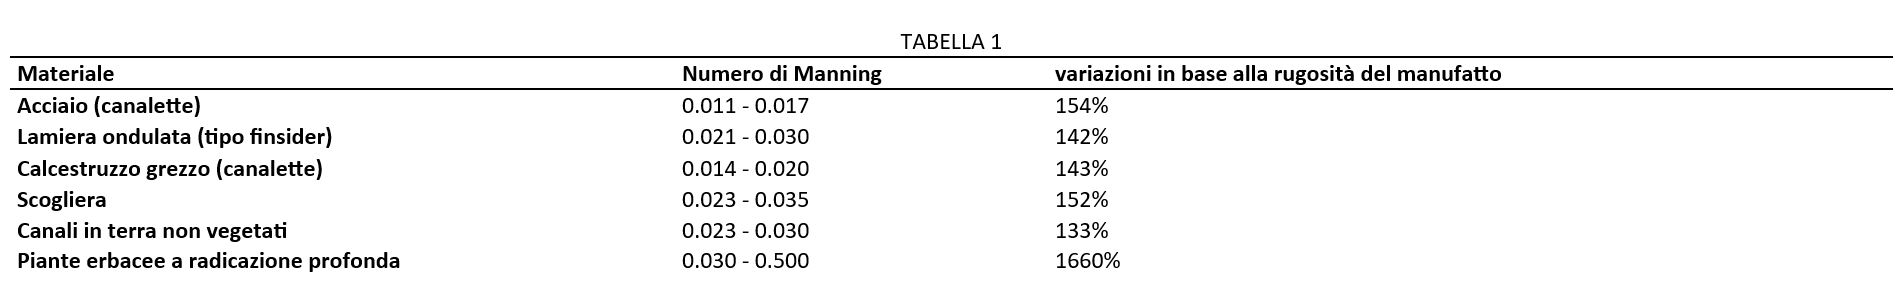 Tabella numeri Manning